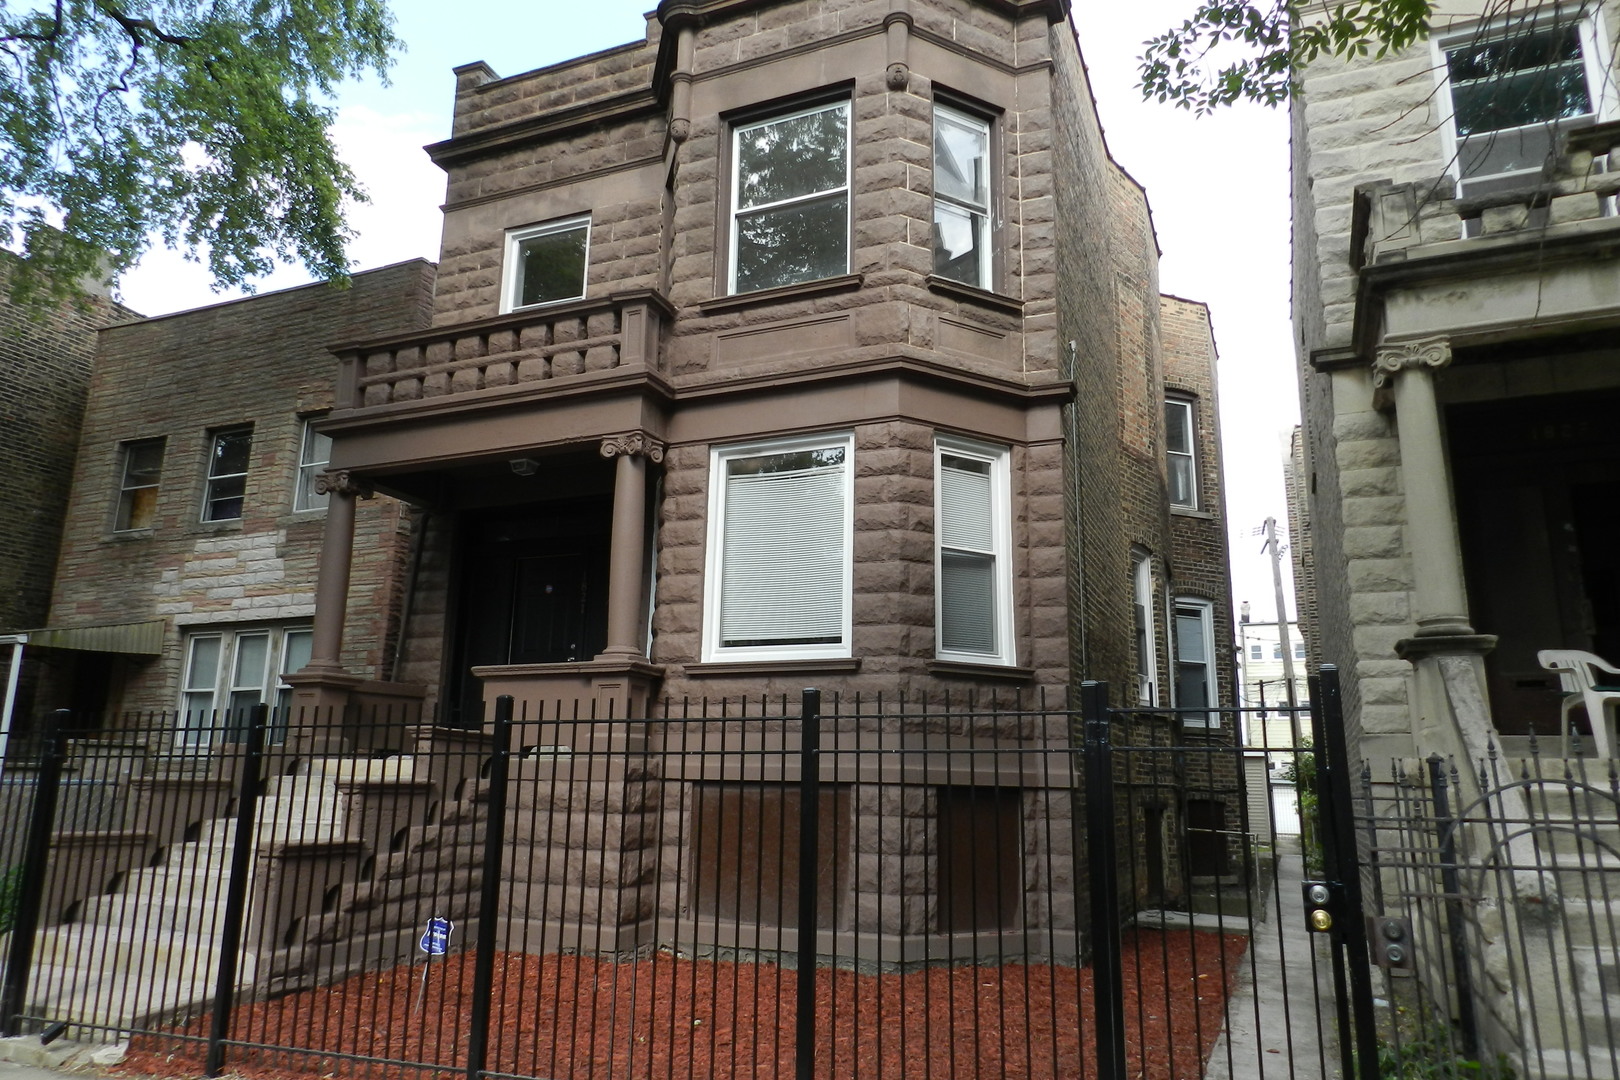 1821 S St. Louis Avenue Chicago, IL 60623 | MLS# 09738381 | @properties